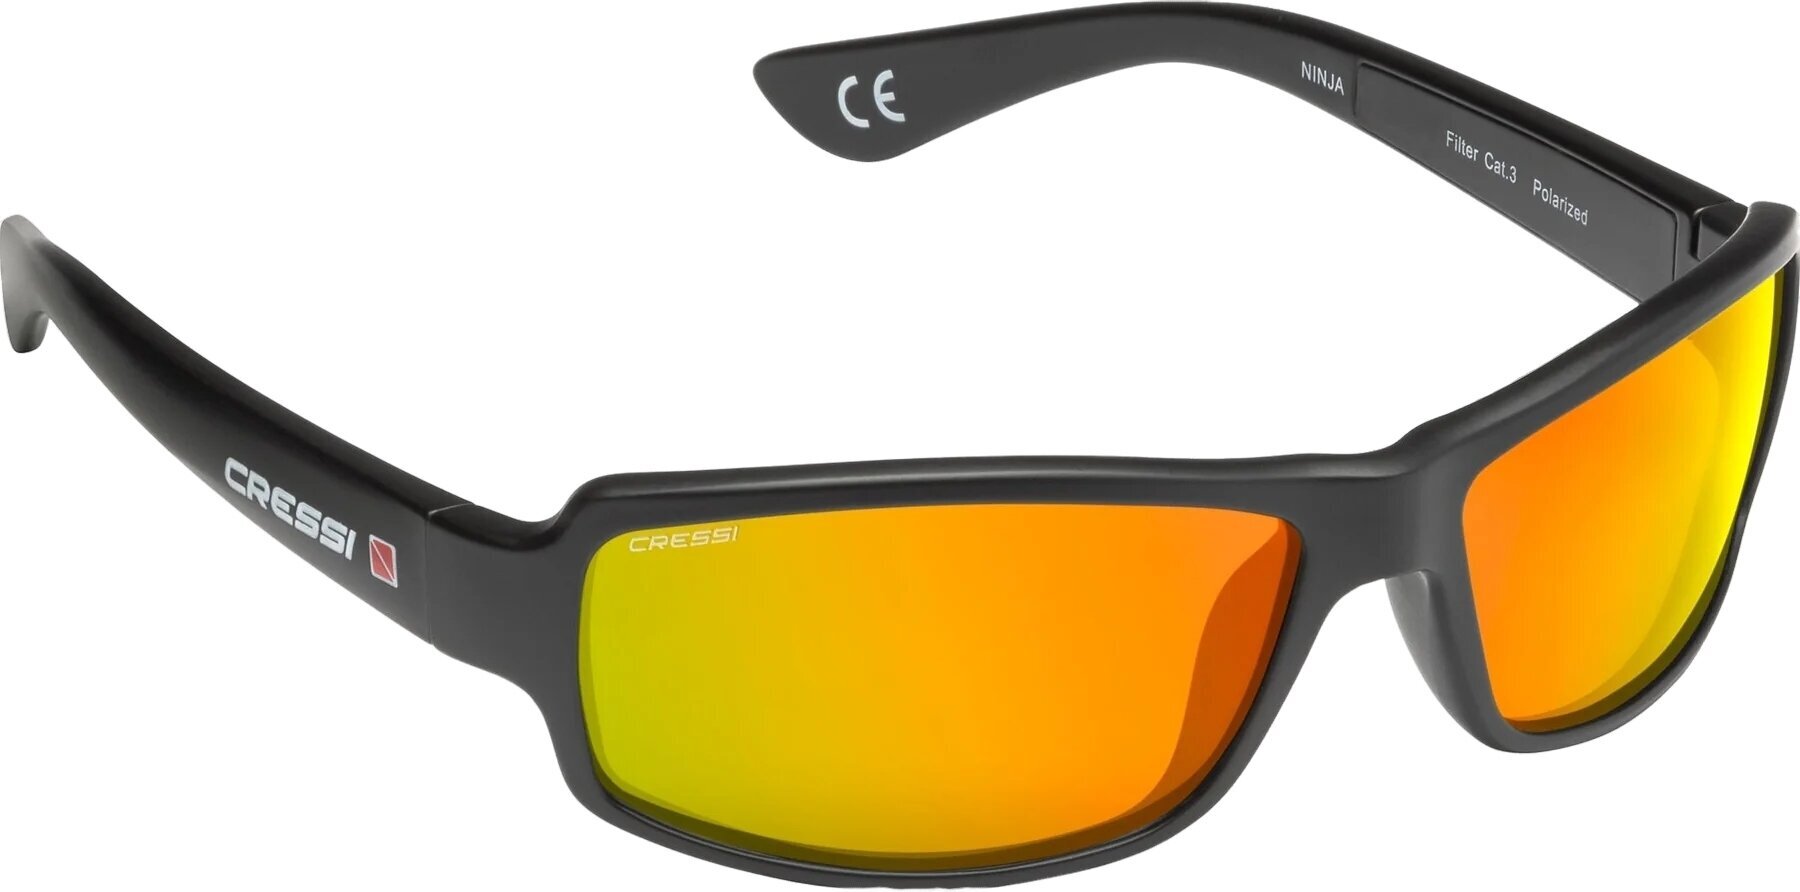 Yachting Glasses Cressi Ninja Black/Orange/Mirrored Yachting Glasses